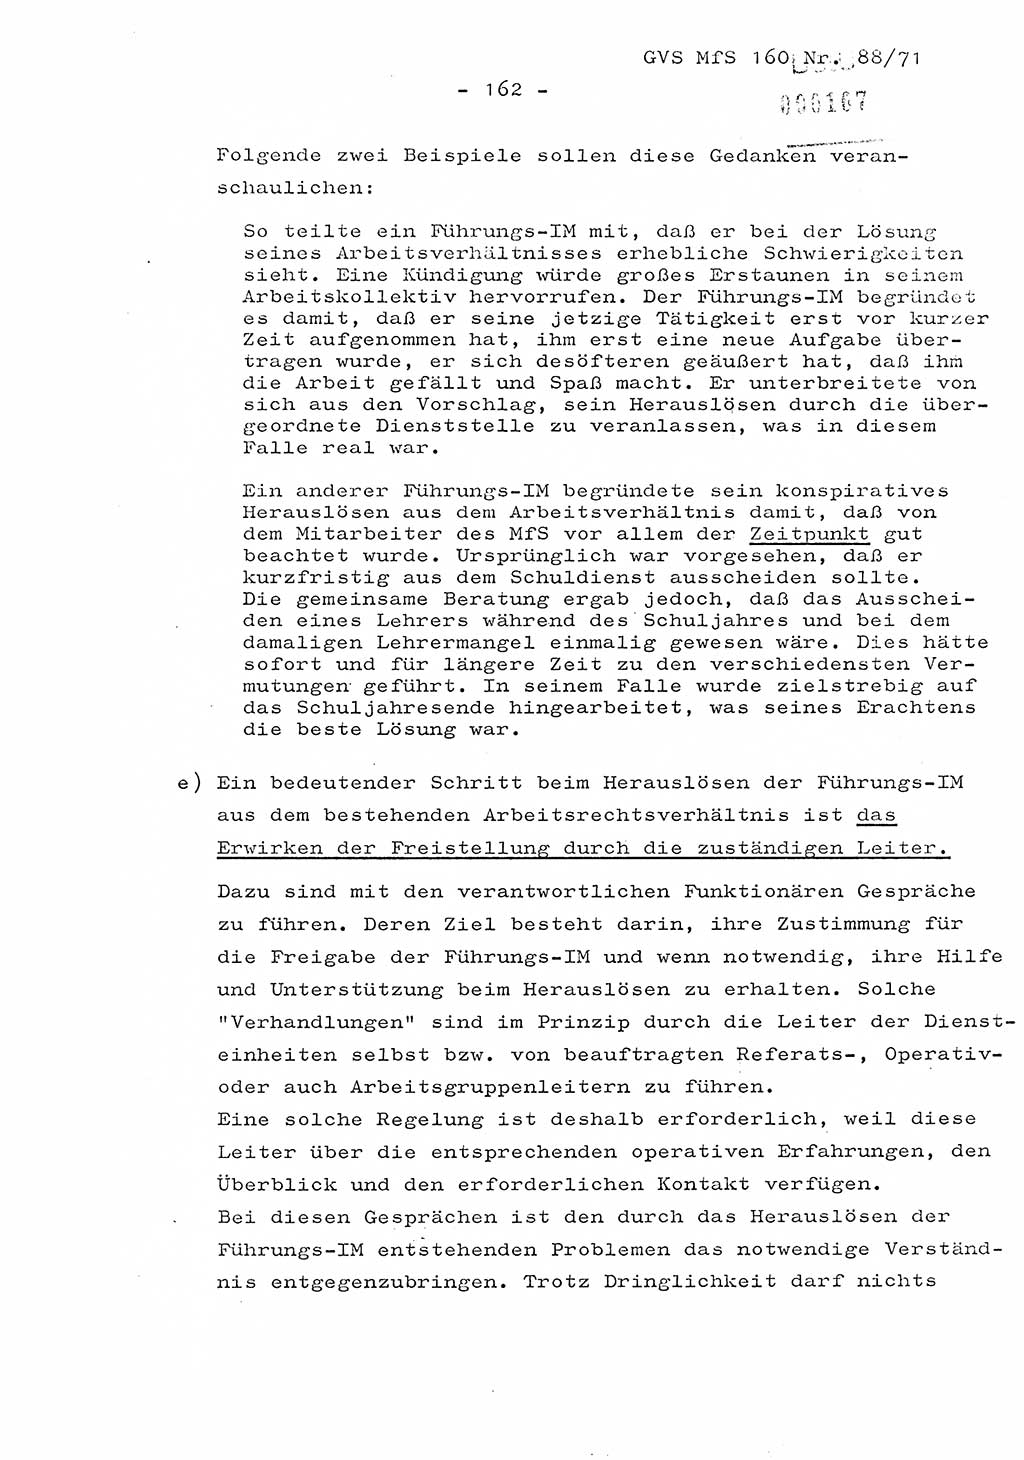 Dissertation Oberstleutnant Josef Schwarz (BV Schwerin), Major Fritz Amm (JHS), Hauptmann Peter Gräßler (JHS), Ministerium für Staatssicherheit (MfS) [Deutsche Demokratische Republik (DDR)], Juristische Hochschule (JHS), Geheime Verschlußsache (GVS) 160-88/71, Potsdam 1972, Seite 162 (Diss. MfS DDR JHS GVS 160-88/71 1972, S. 162)